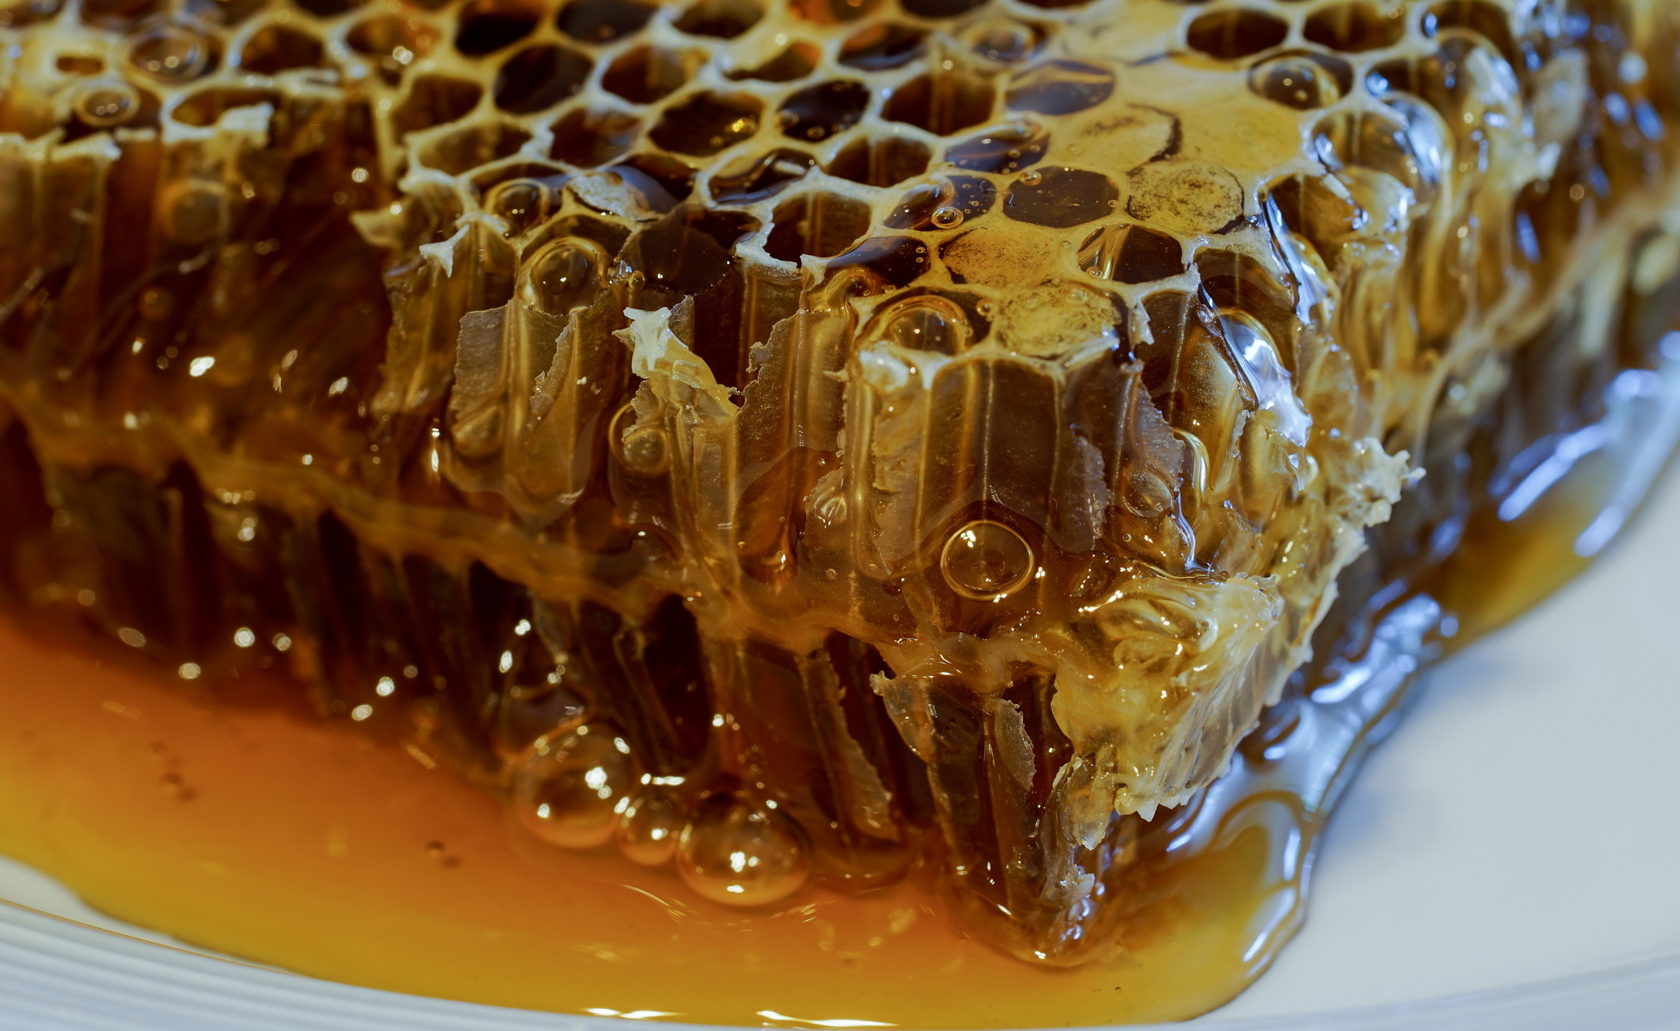 Пчелиные соты с медом